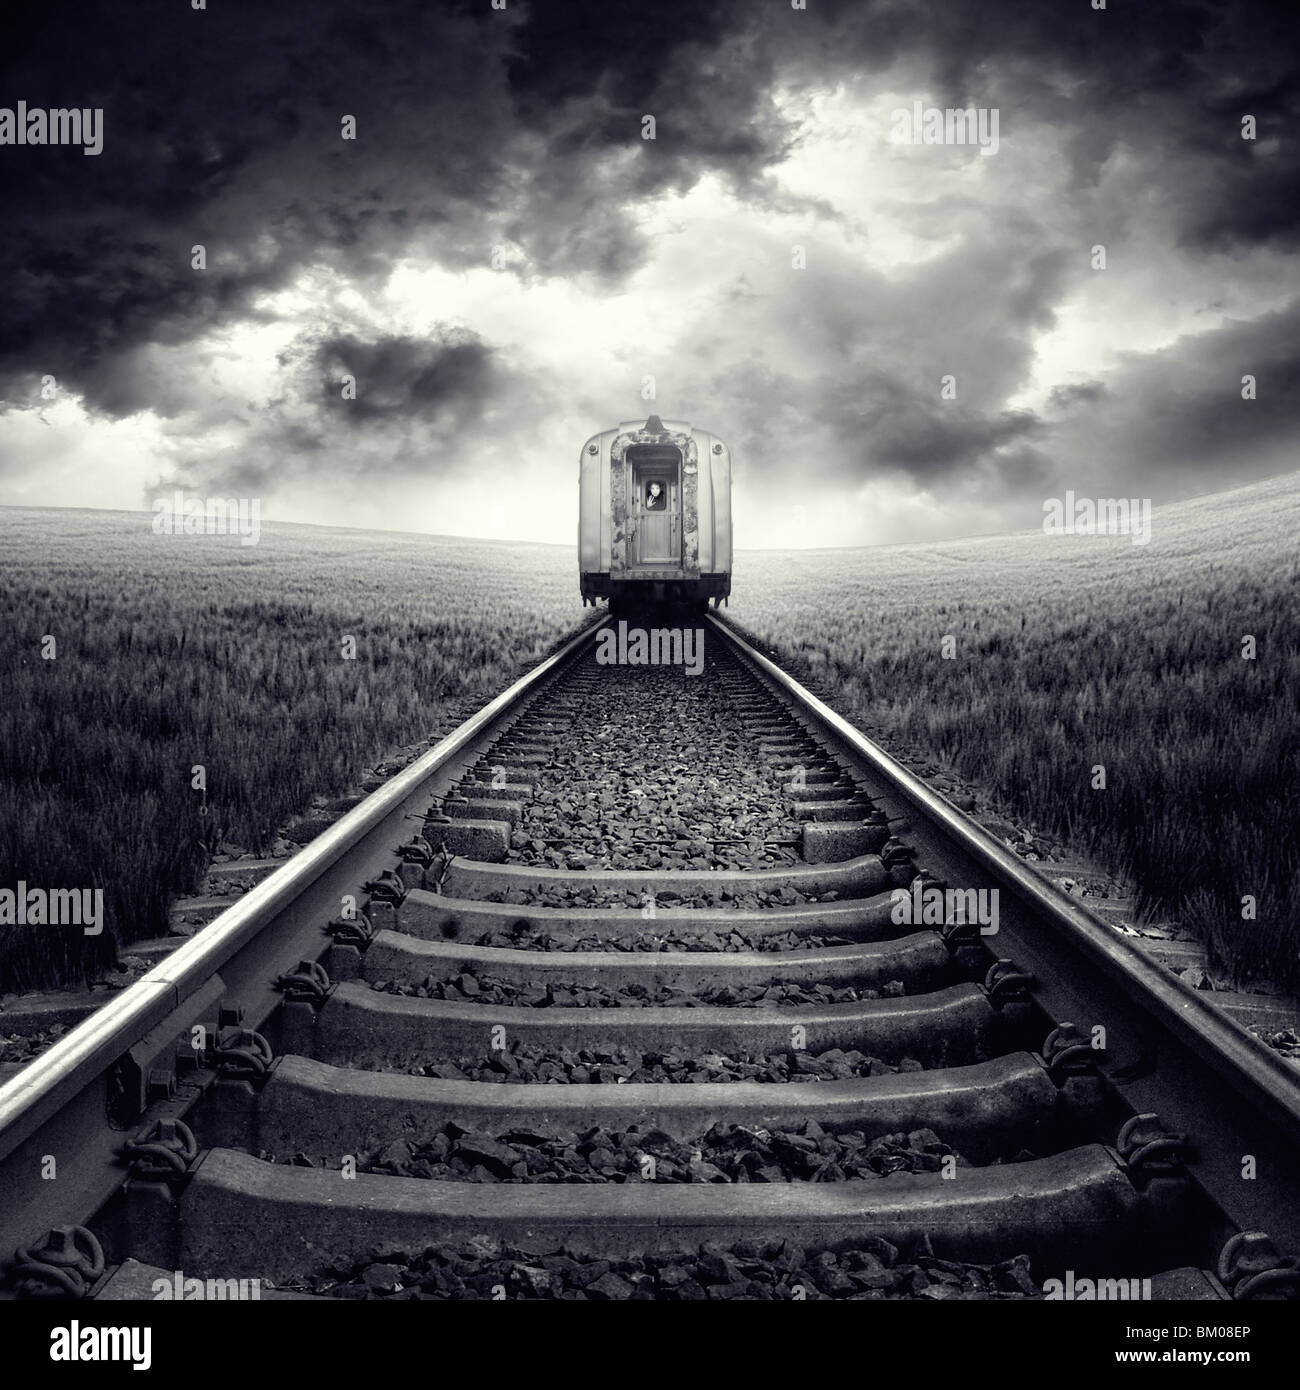 Una vista posteriore di un treno su rotaie passando attraverso un campo di grano con cielo temporalesco Foto Stock